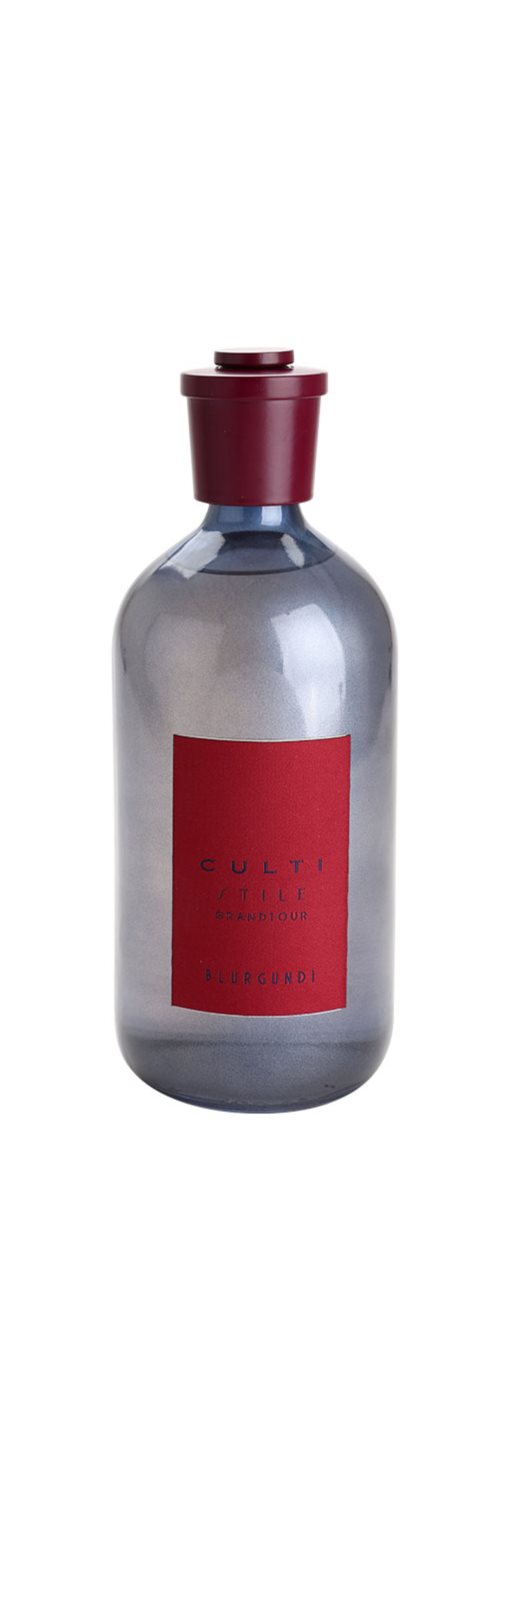 Culti - Stile Grandtour Acqua aroma diffuseur (Burgundy)